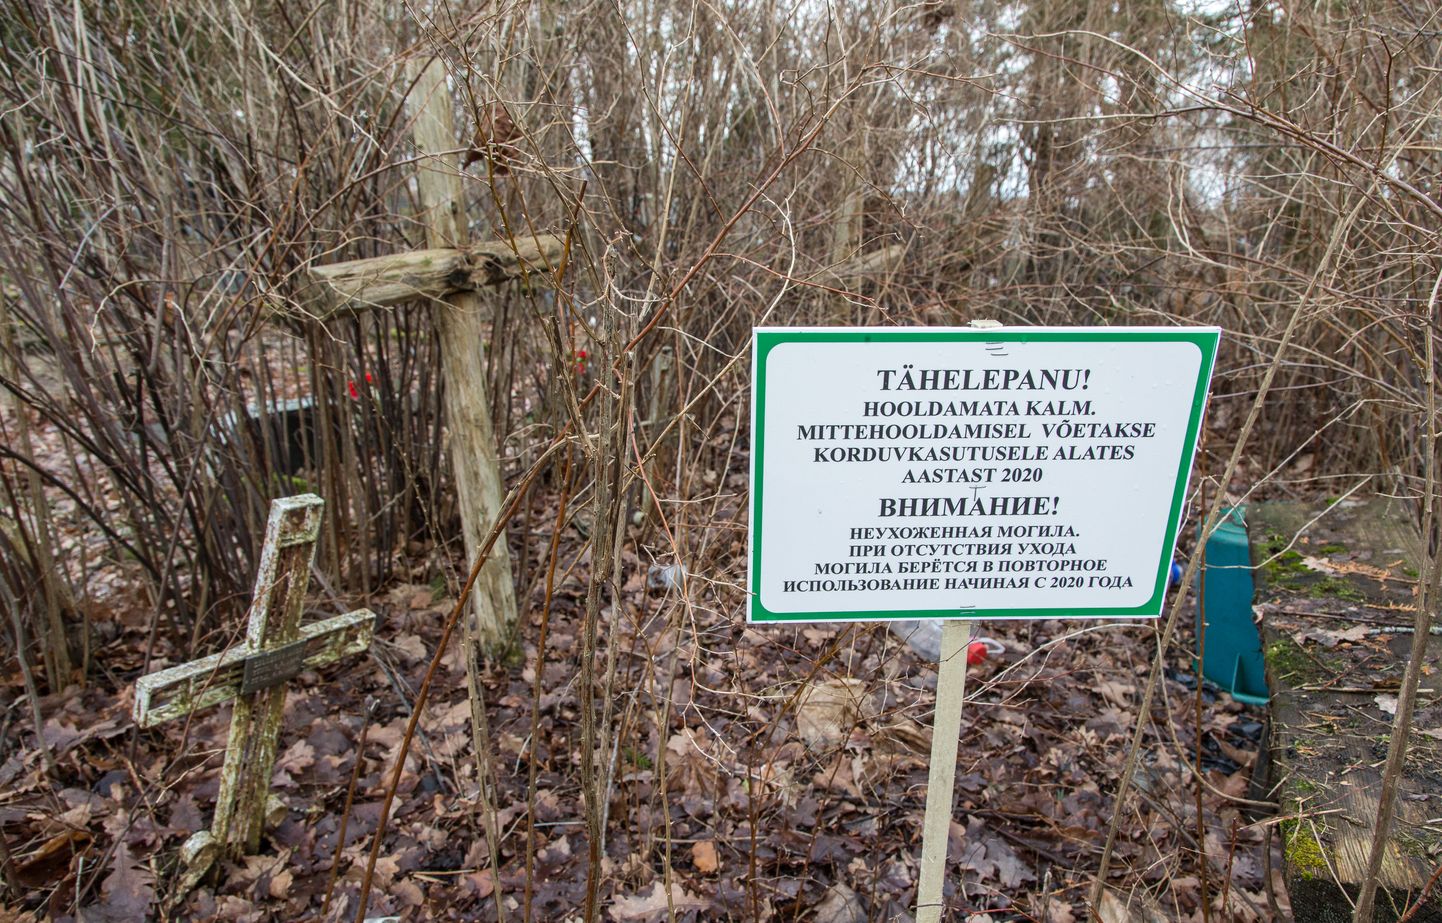 Kaks aastat tagasi asuti Jõhvi kalmistul hüljatud kalmudele paigaldama hoiatussilte platside korduvkasutusele võtmise kohta. Keegi pole aga sellegipoolest hauakohti vormistama tulnud.